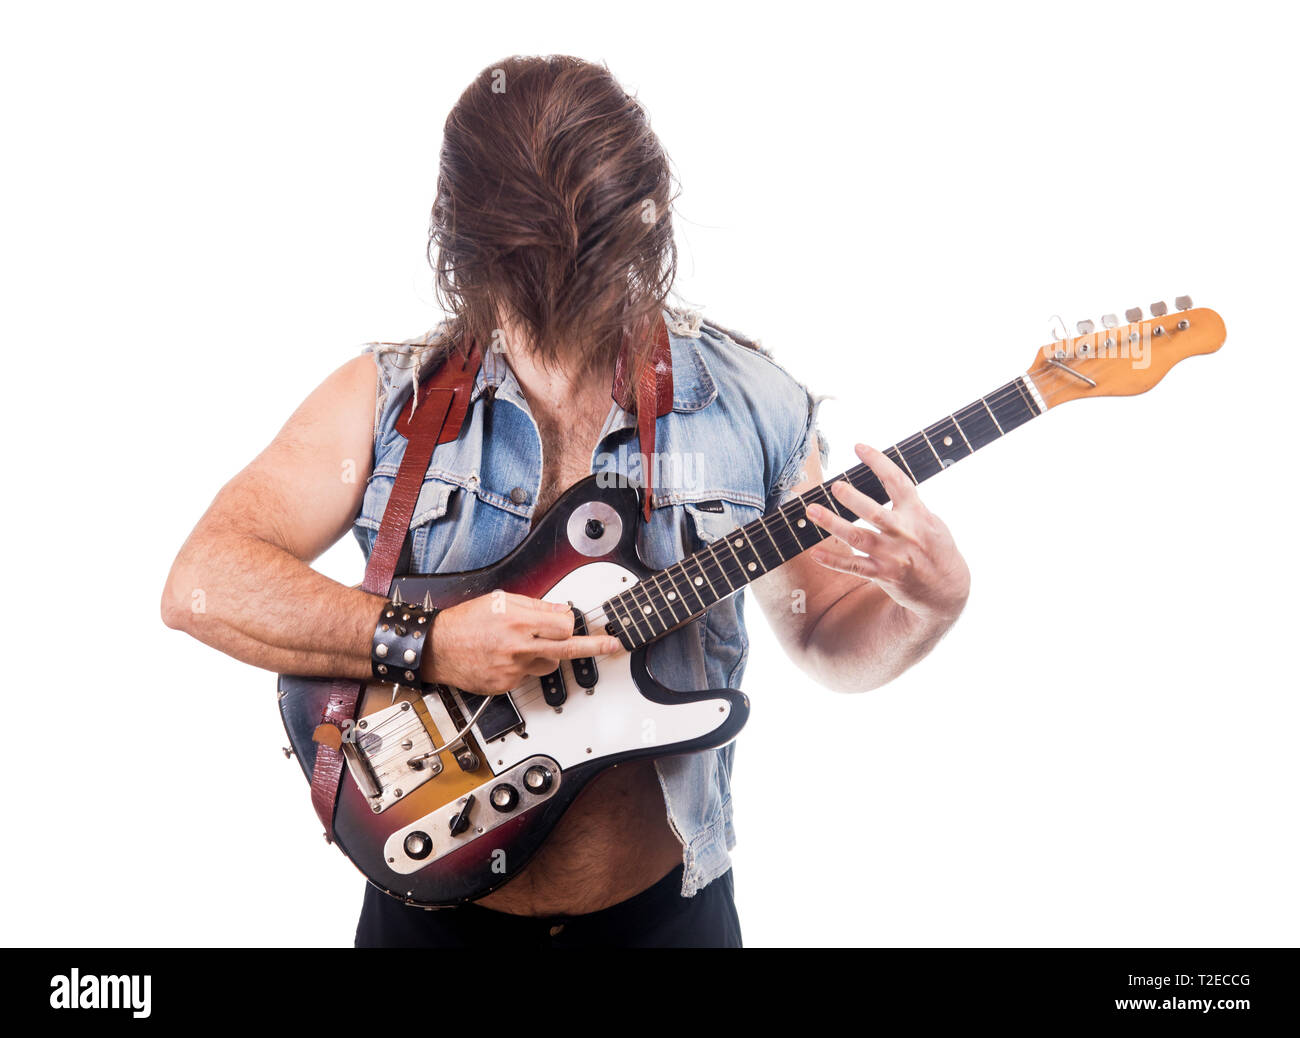 Aufgeregt Gitarrist in Jeans Jacke, auf weißem Hintergrund. Mann mit versteckte Gesicht von eigenen fliegenden Haare Spiel an der E-Gitarre. Stockfoto